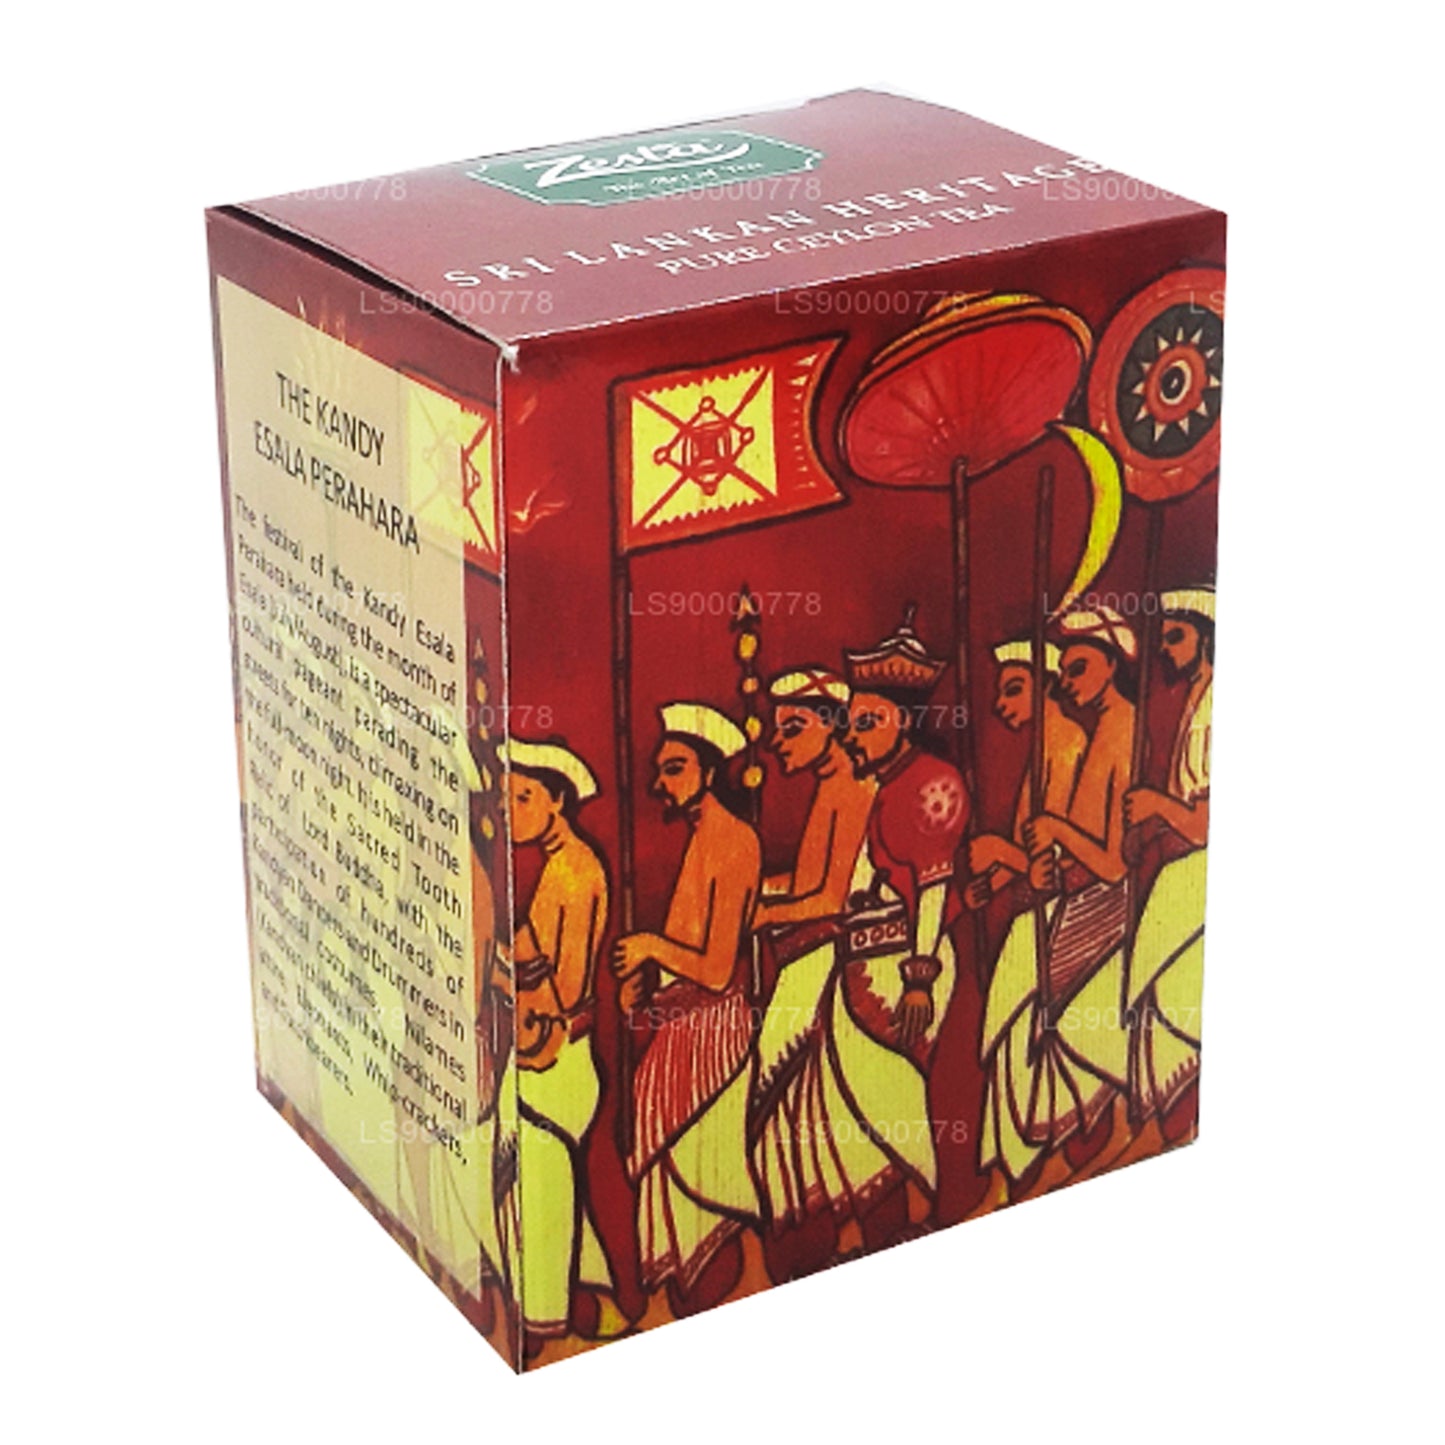 Thé de Ceylan pur Zesta Sri Lankan Heritage Kenilworth PEKOE 1 (100 g)